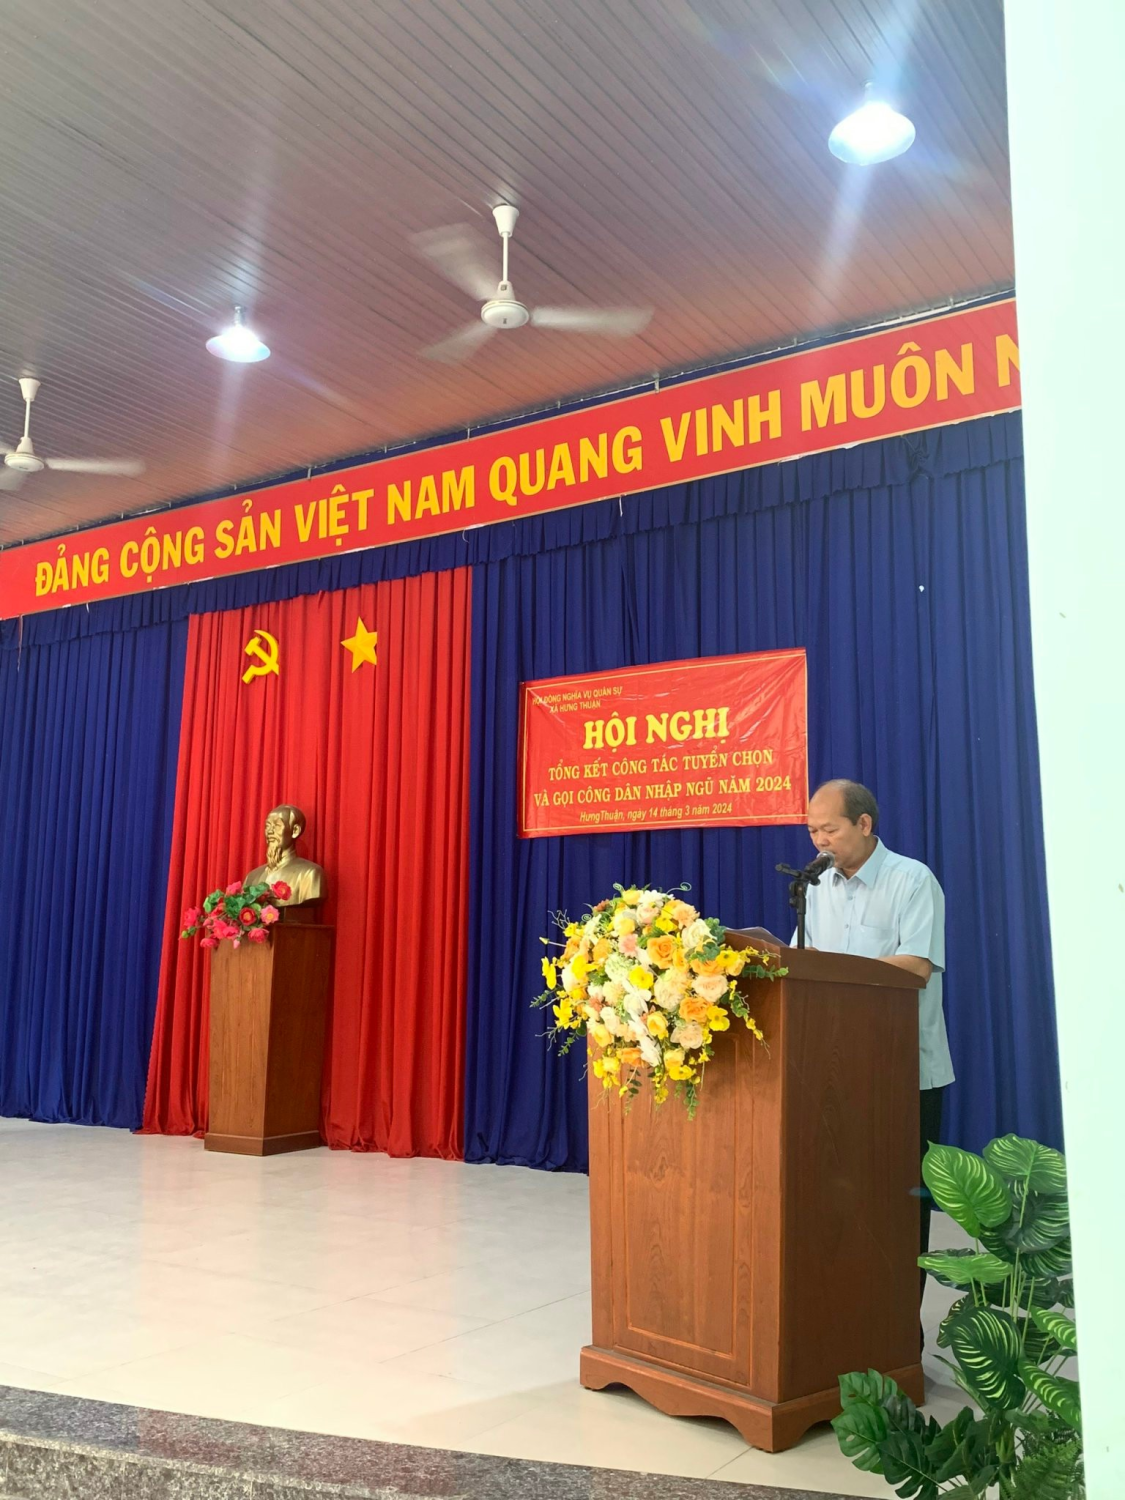 Xã Hưng Thuận: Hội đồng nghĩa vụ quân sự xã Hưng Thuận tổ chức tổng kết công tác tuyển chọn gọi công dân nhập ngũ năm 2024